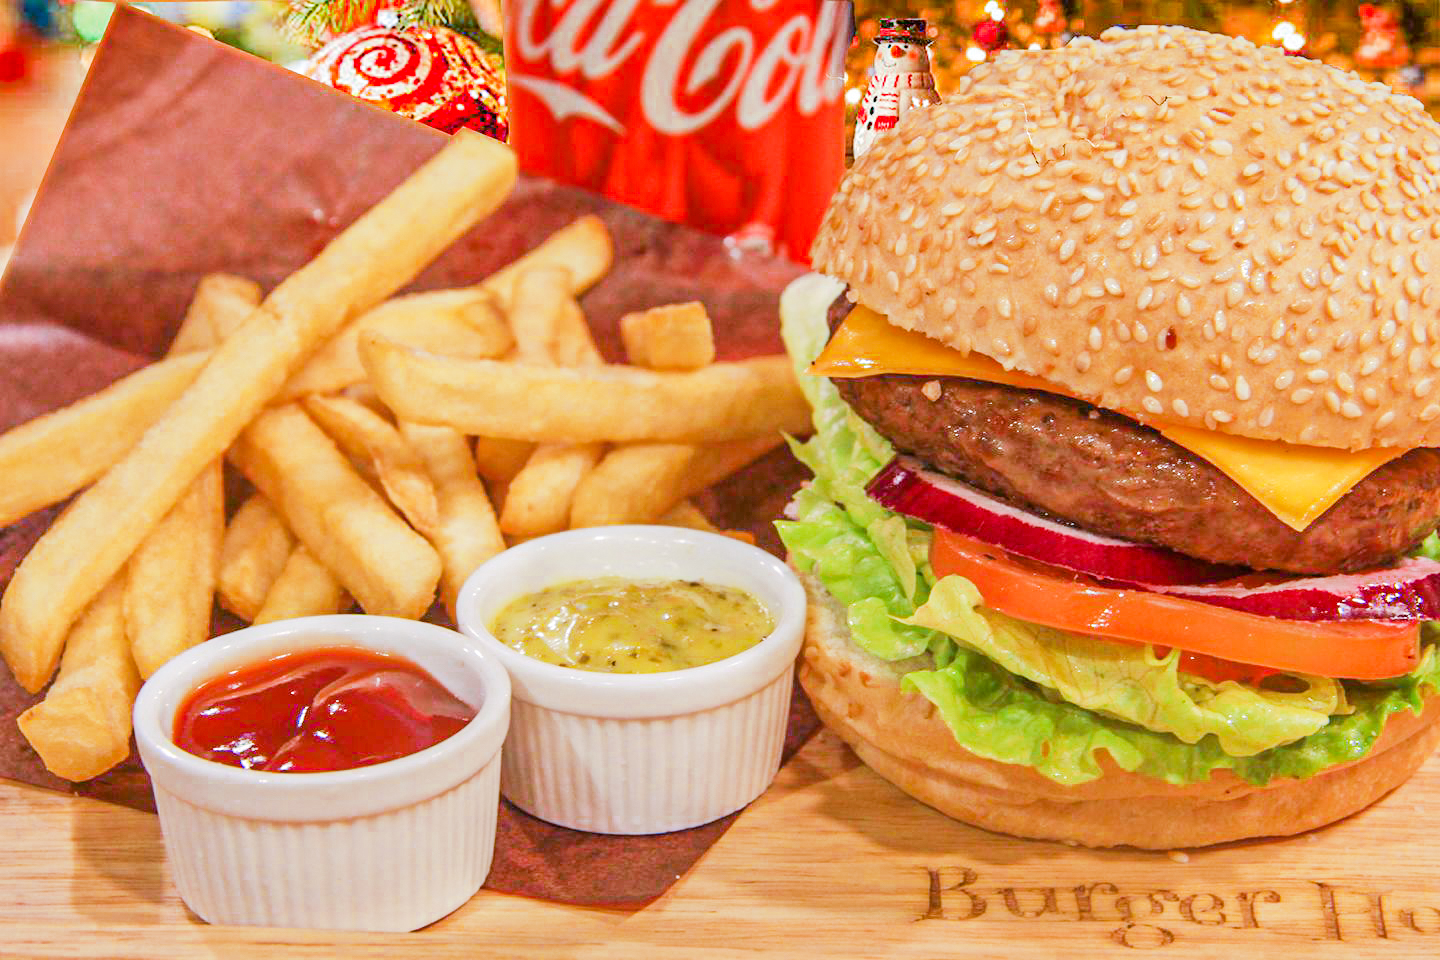 灣仔 街坊名物 平民漢堡店 Burger Home 漢堡 香港品牌 良心小店 芝士澳洲羊肉漢堡